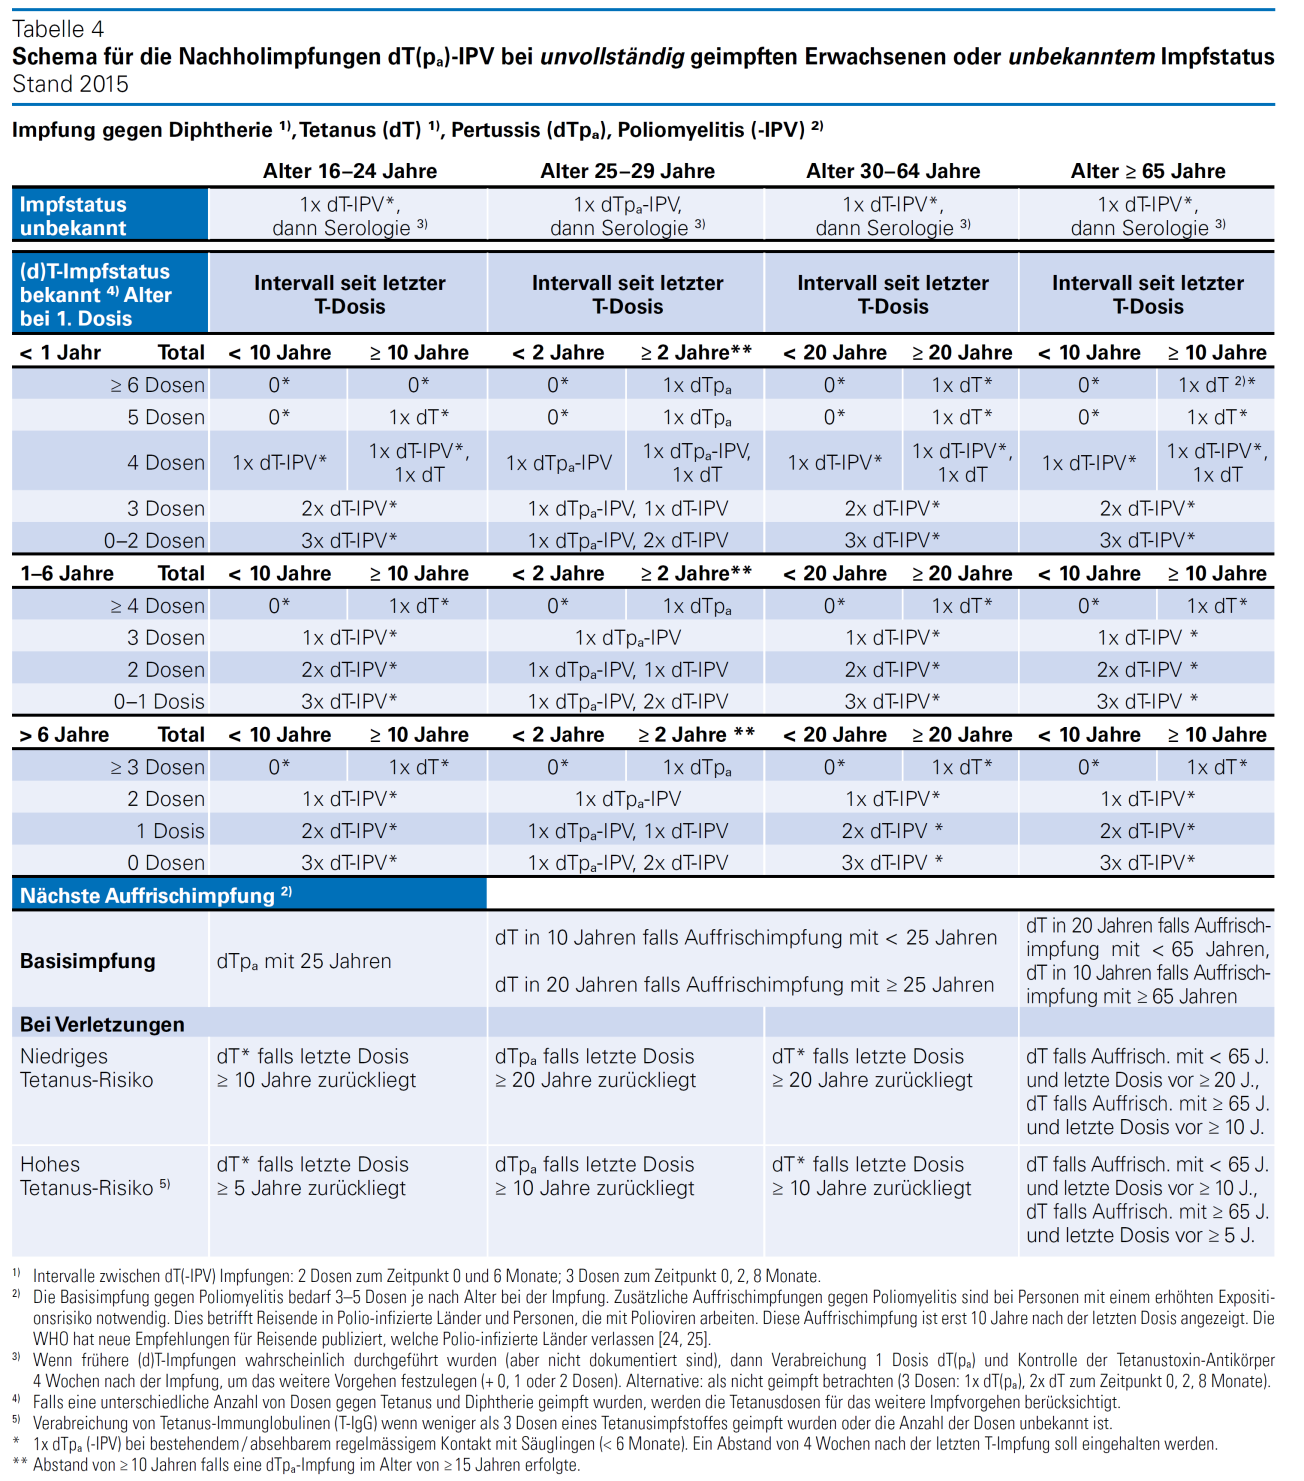 Tabelle 2 Impfschema für Diphtherie, Tetanus, Pertussis und Poliomyelitis für ungeimpfte oder